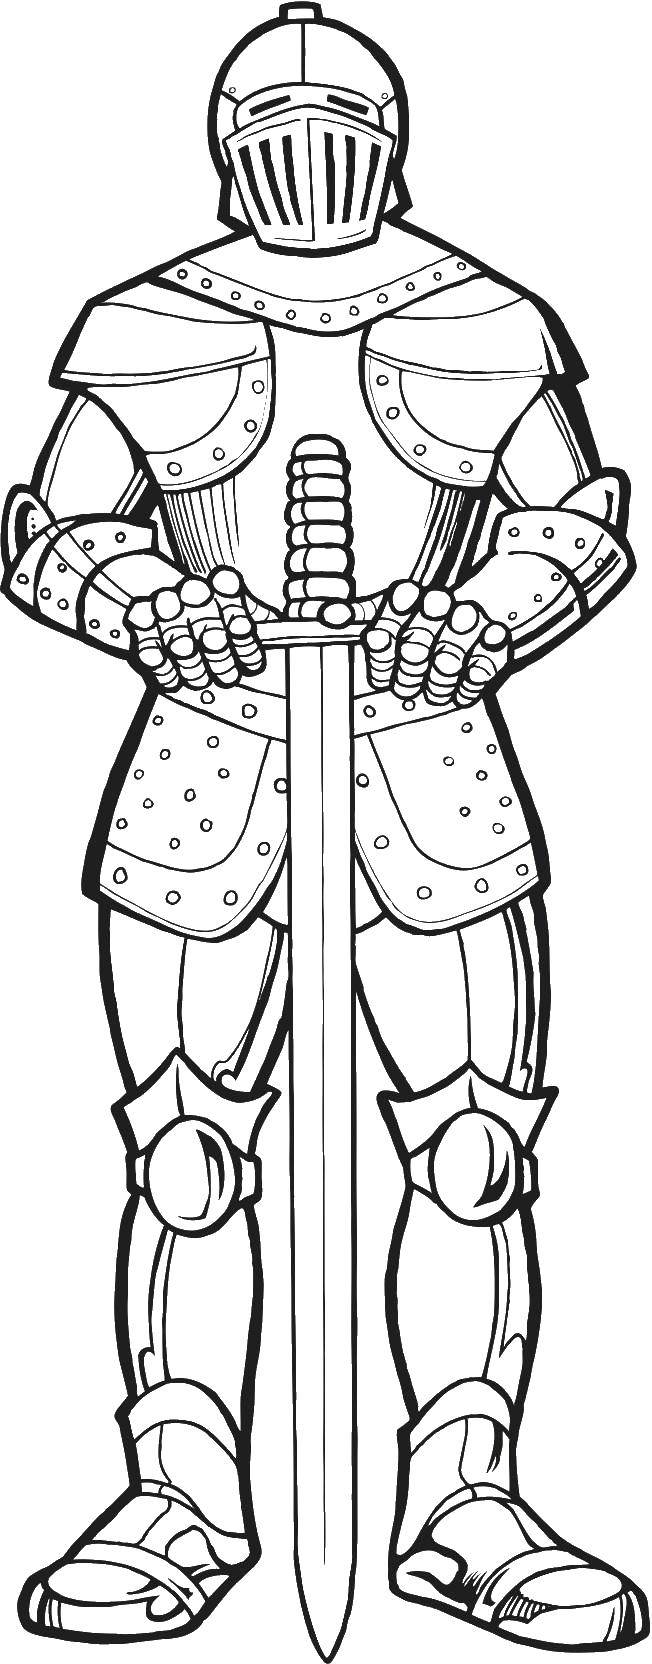 Раскраска рыцаря в доспехах с мечом (доспехи, мечи)